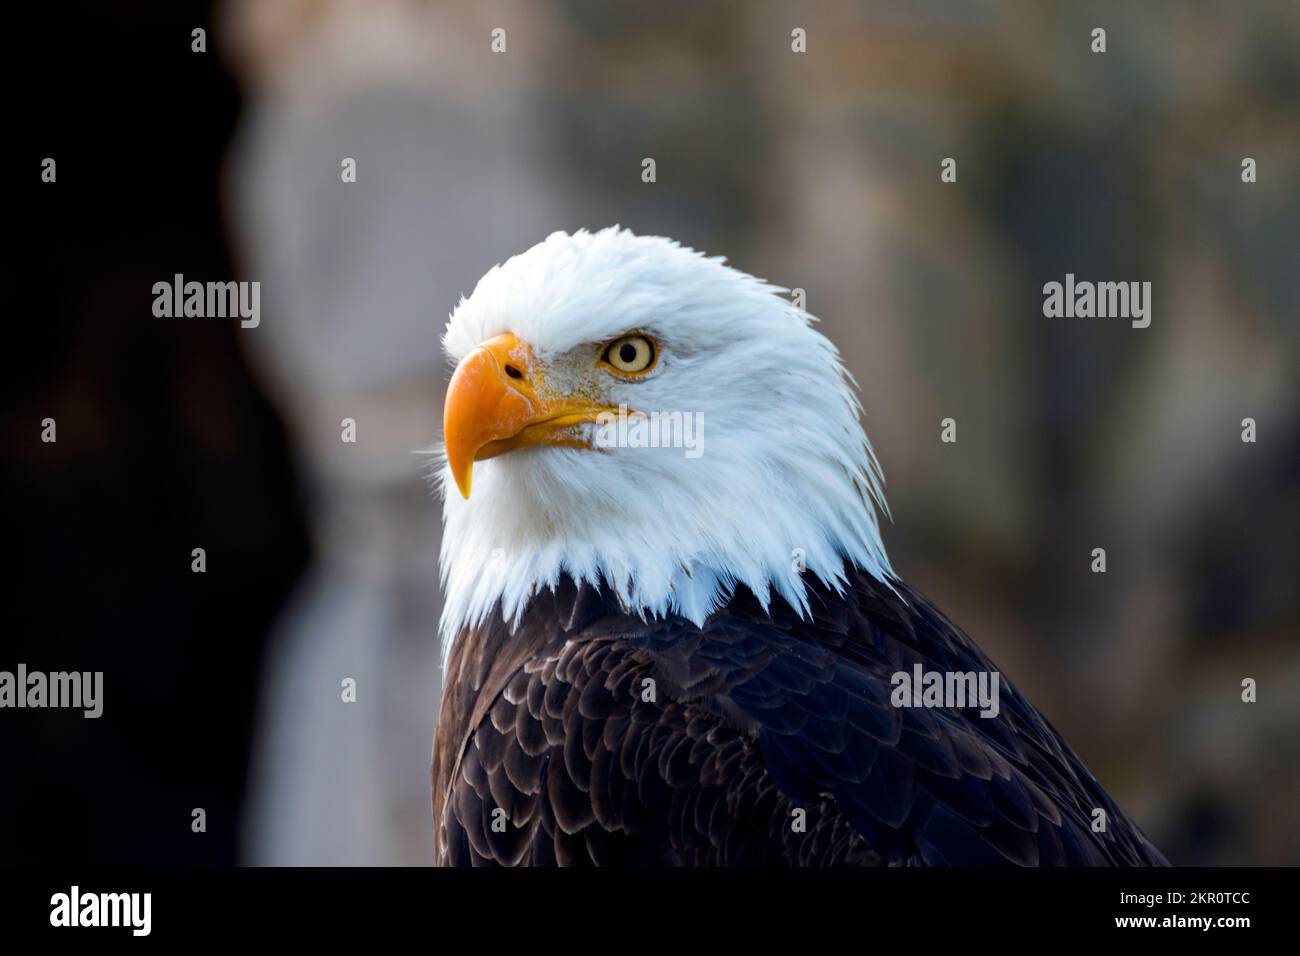 águila calva, primer plano con fondo desenfocado Stock Photo